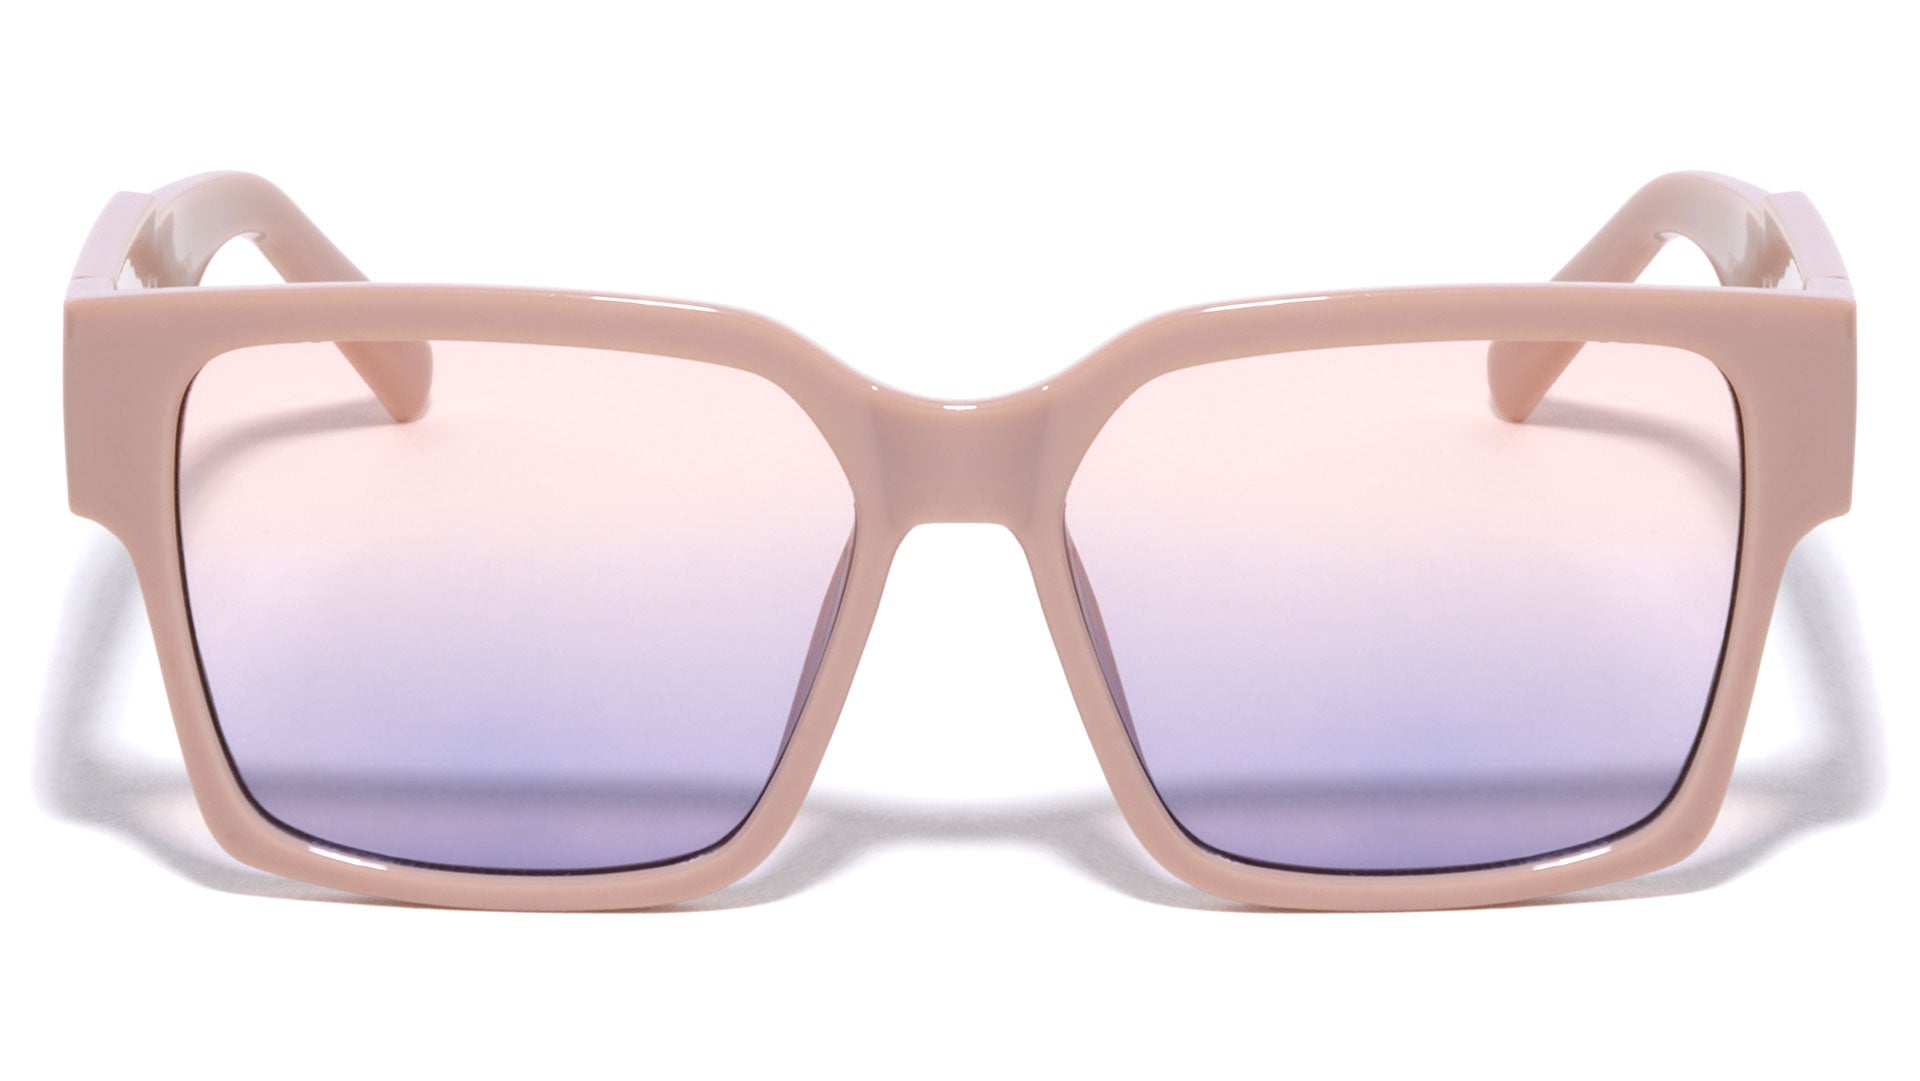 2019 1.1 Millionaire Sunglasses  Sunglasses, Cat eye sunglasses women,  Glasses fashion